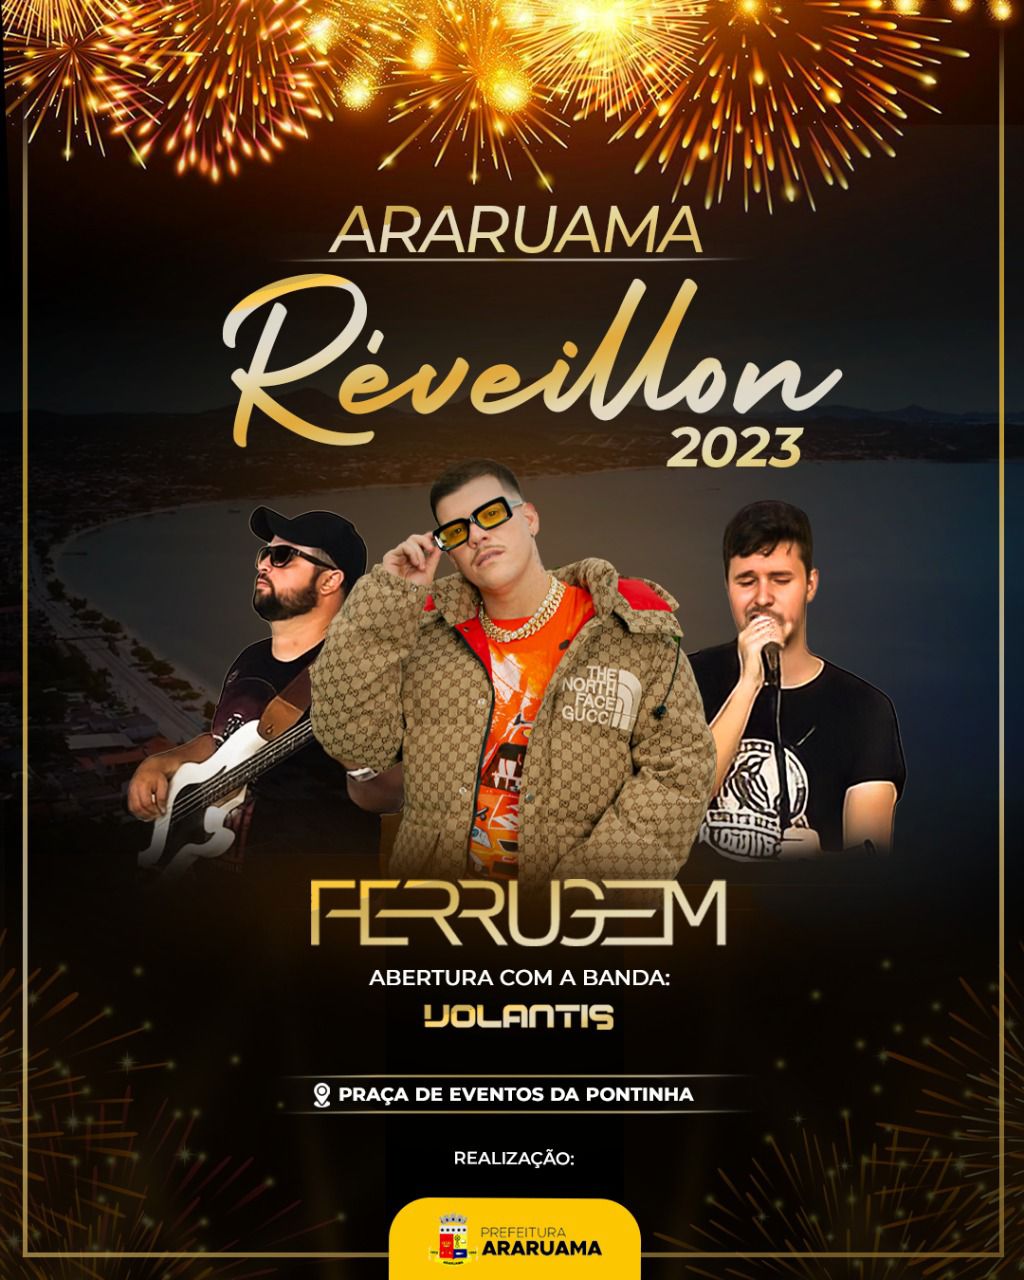 Araruama vai festejar o Réveillon 2023 com shows e a tradicional queima de fogos